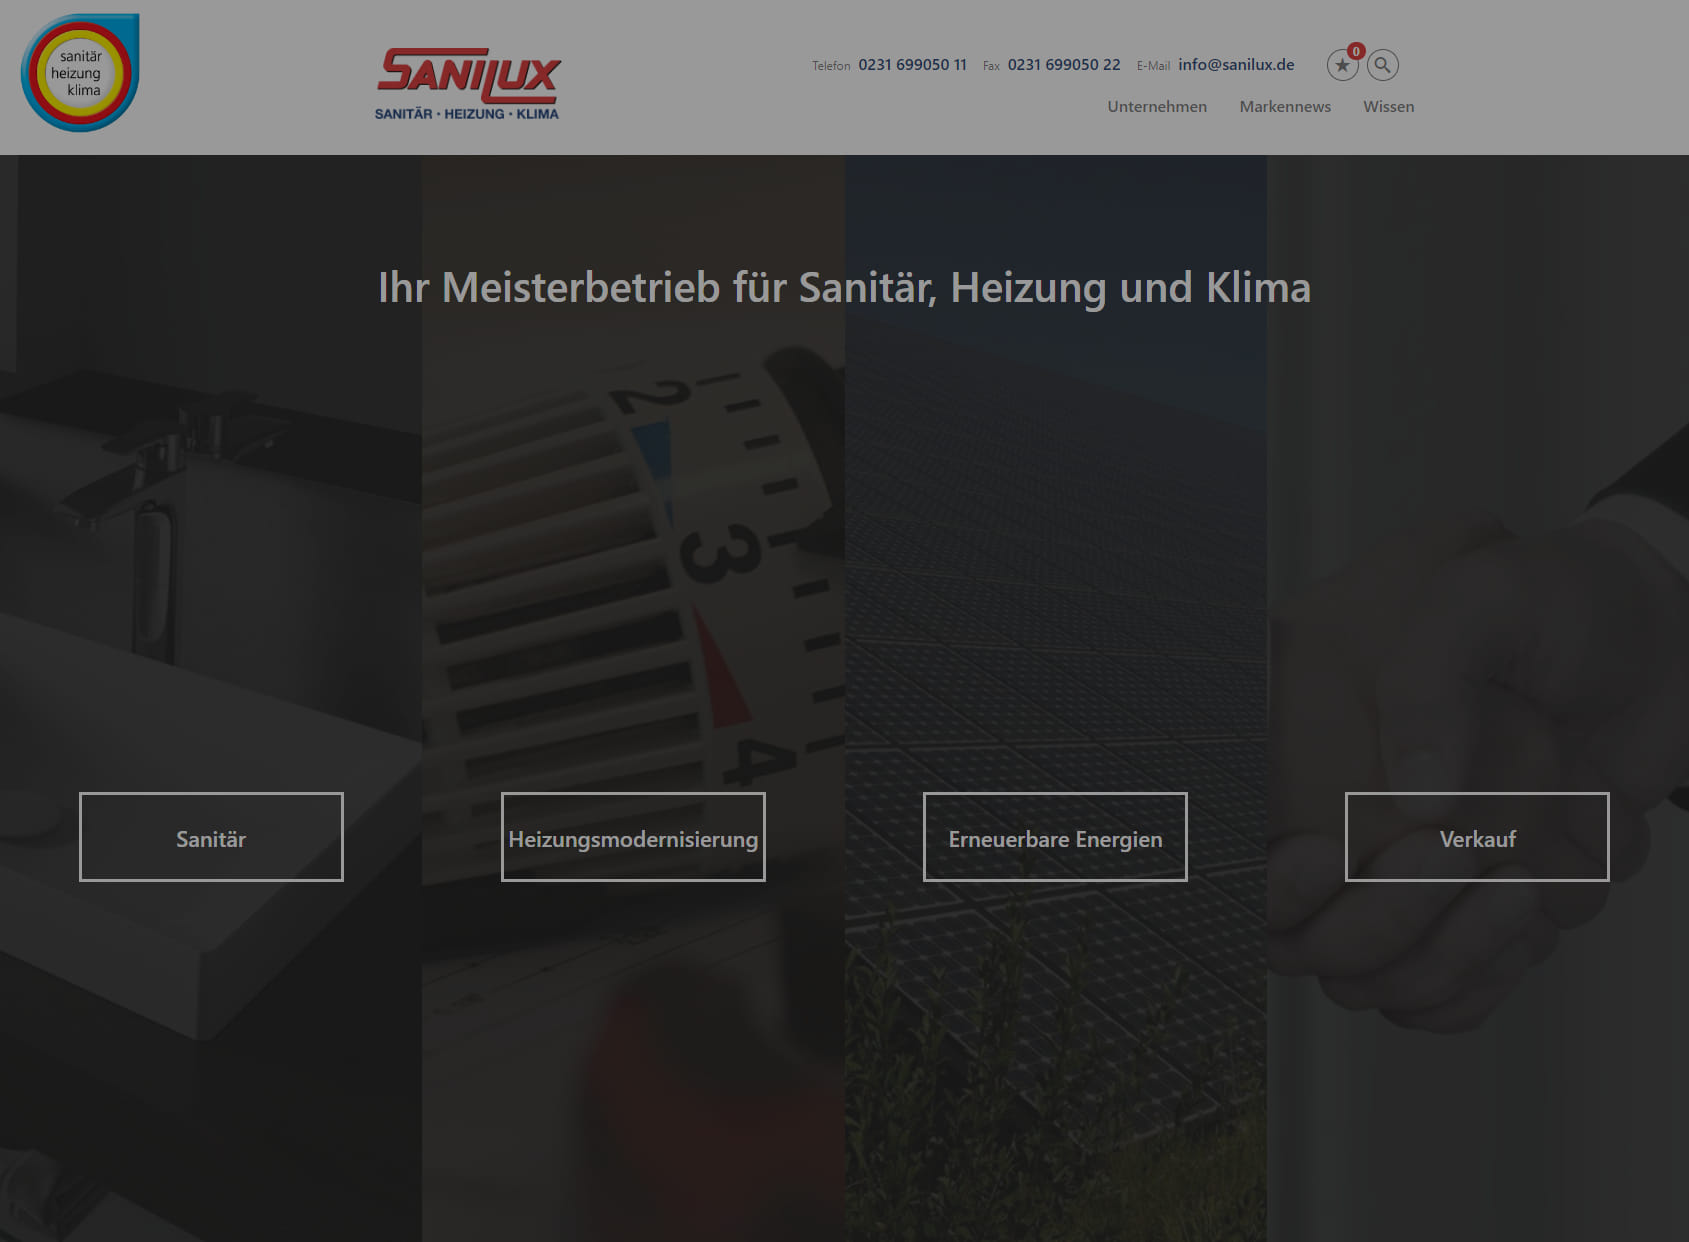 SANILUX GmbH